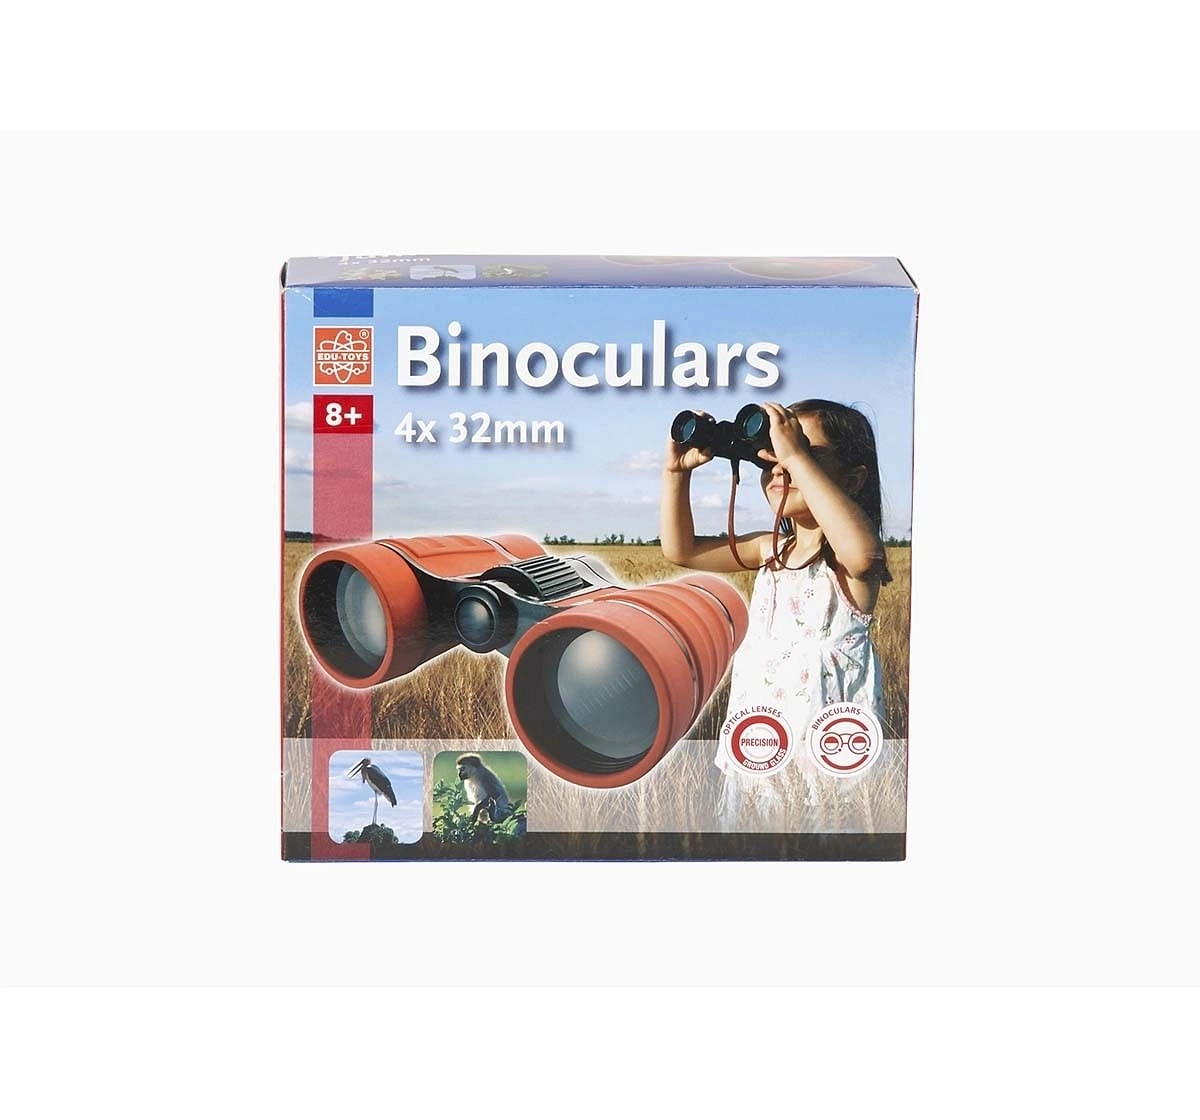 Eduscience Binoculars - Green Science Equipments for Kids age 8Y+